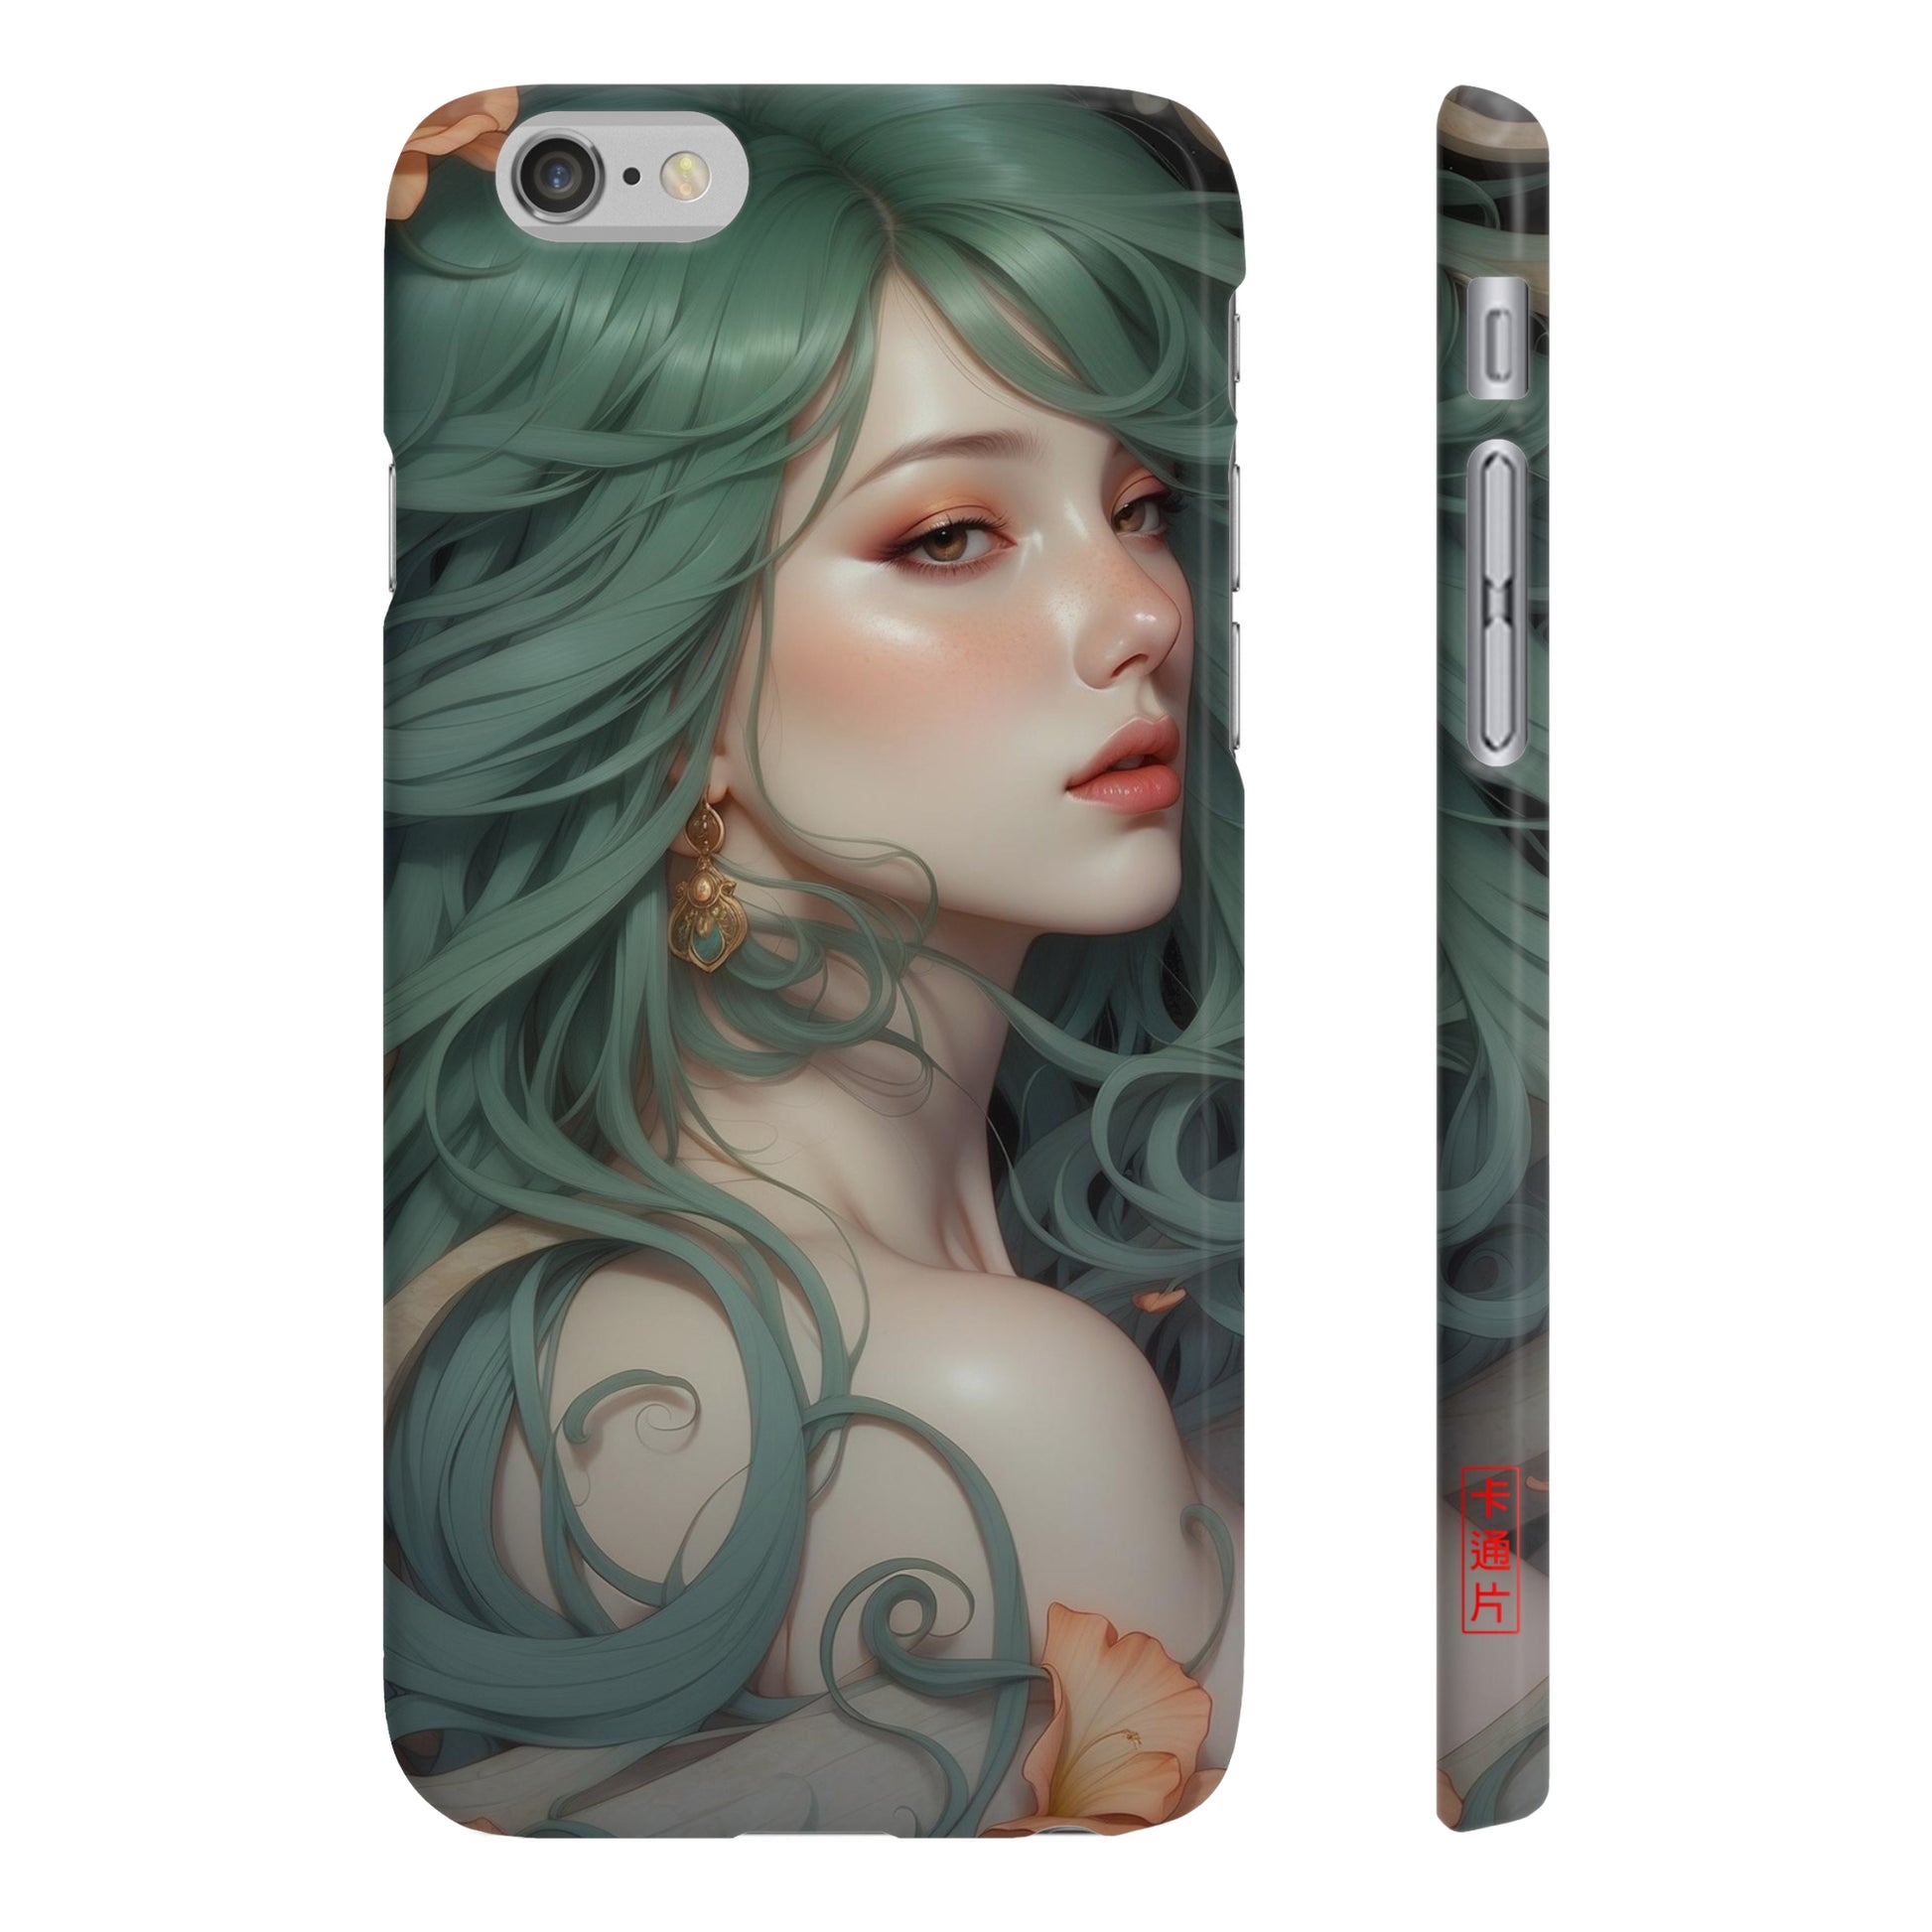 Kǎtōng Piàn - Mermaid Collection - 027 - Slim Phone Cases Printify